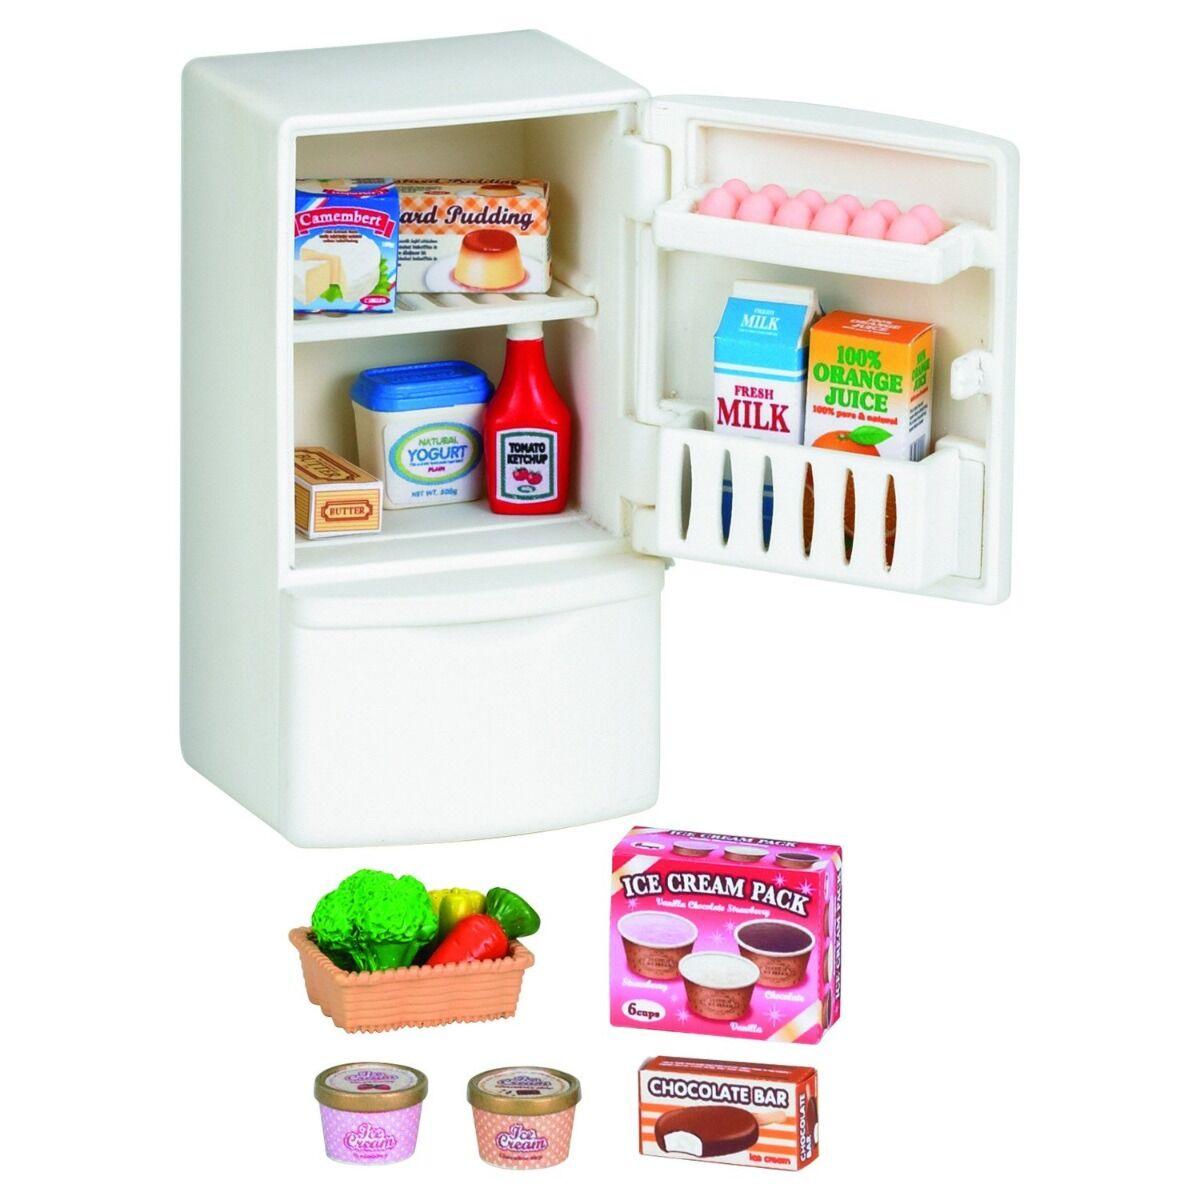 Sylvanian Families: Холодильник, продукты, игровой набор, подарок девочке, фото 1